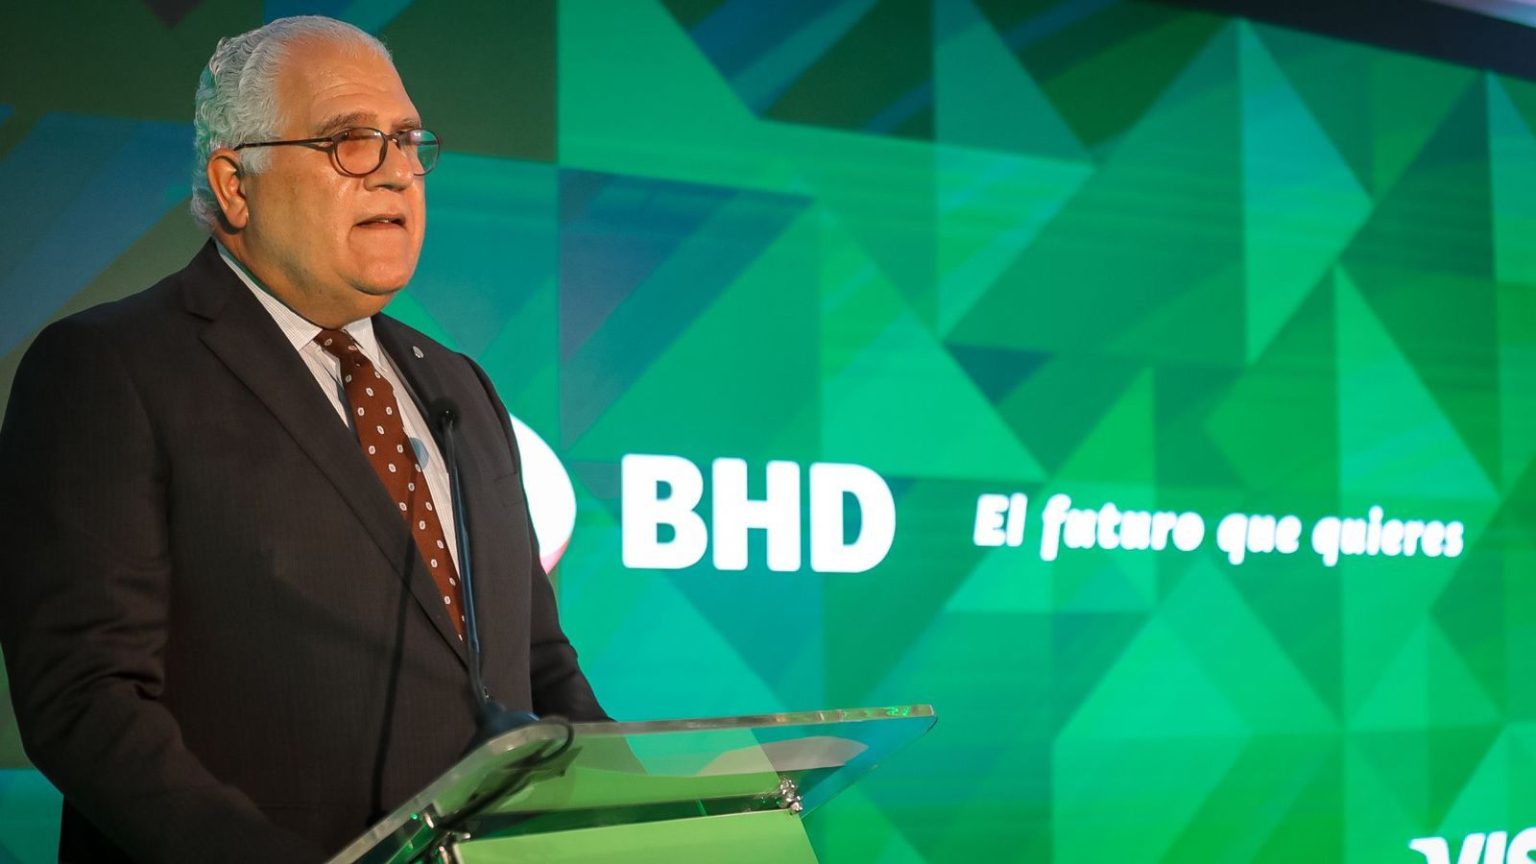 BHD lanza nueva tarjeta inclusiva con multiples beneficios